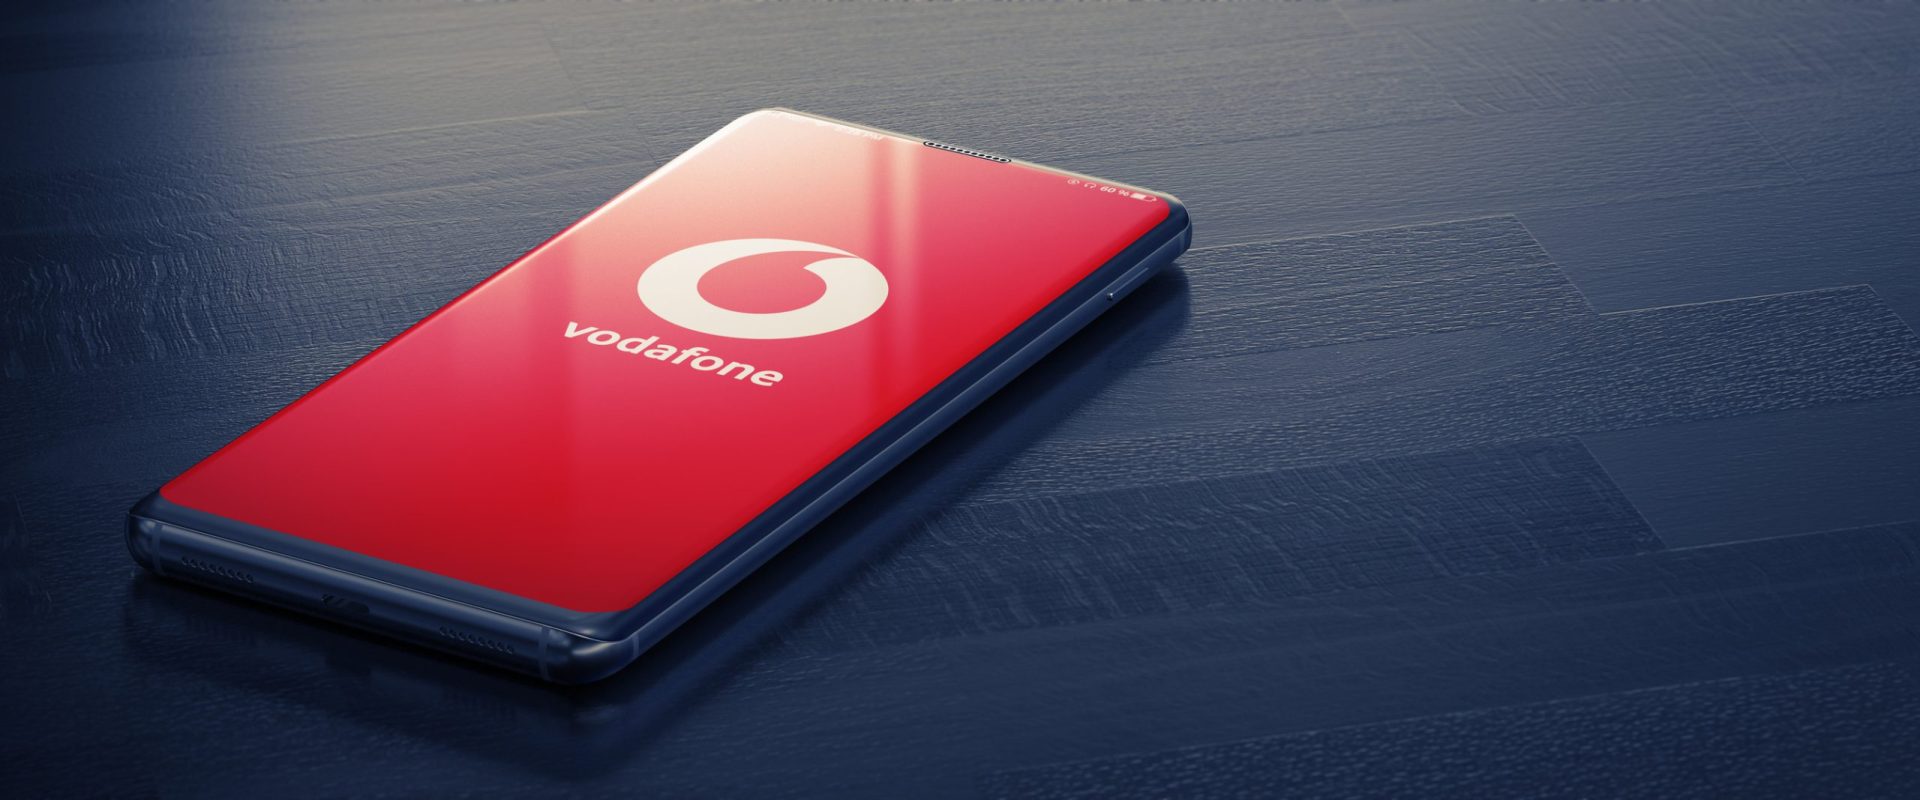 Serviço da Vodafone com falhas na rede móvel e internet. Operadora já a par do problema